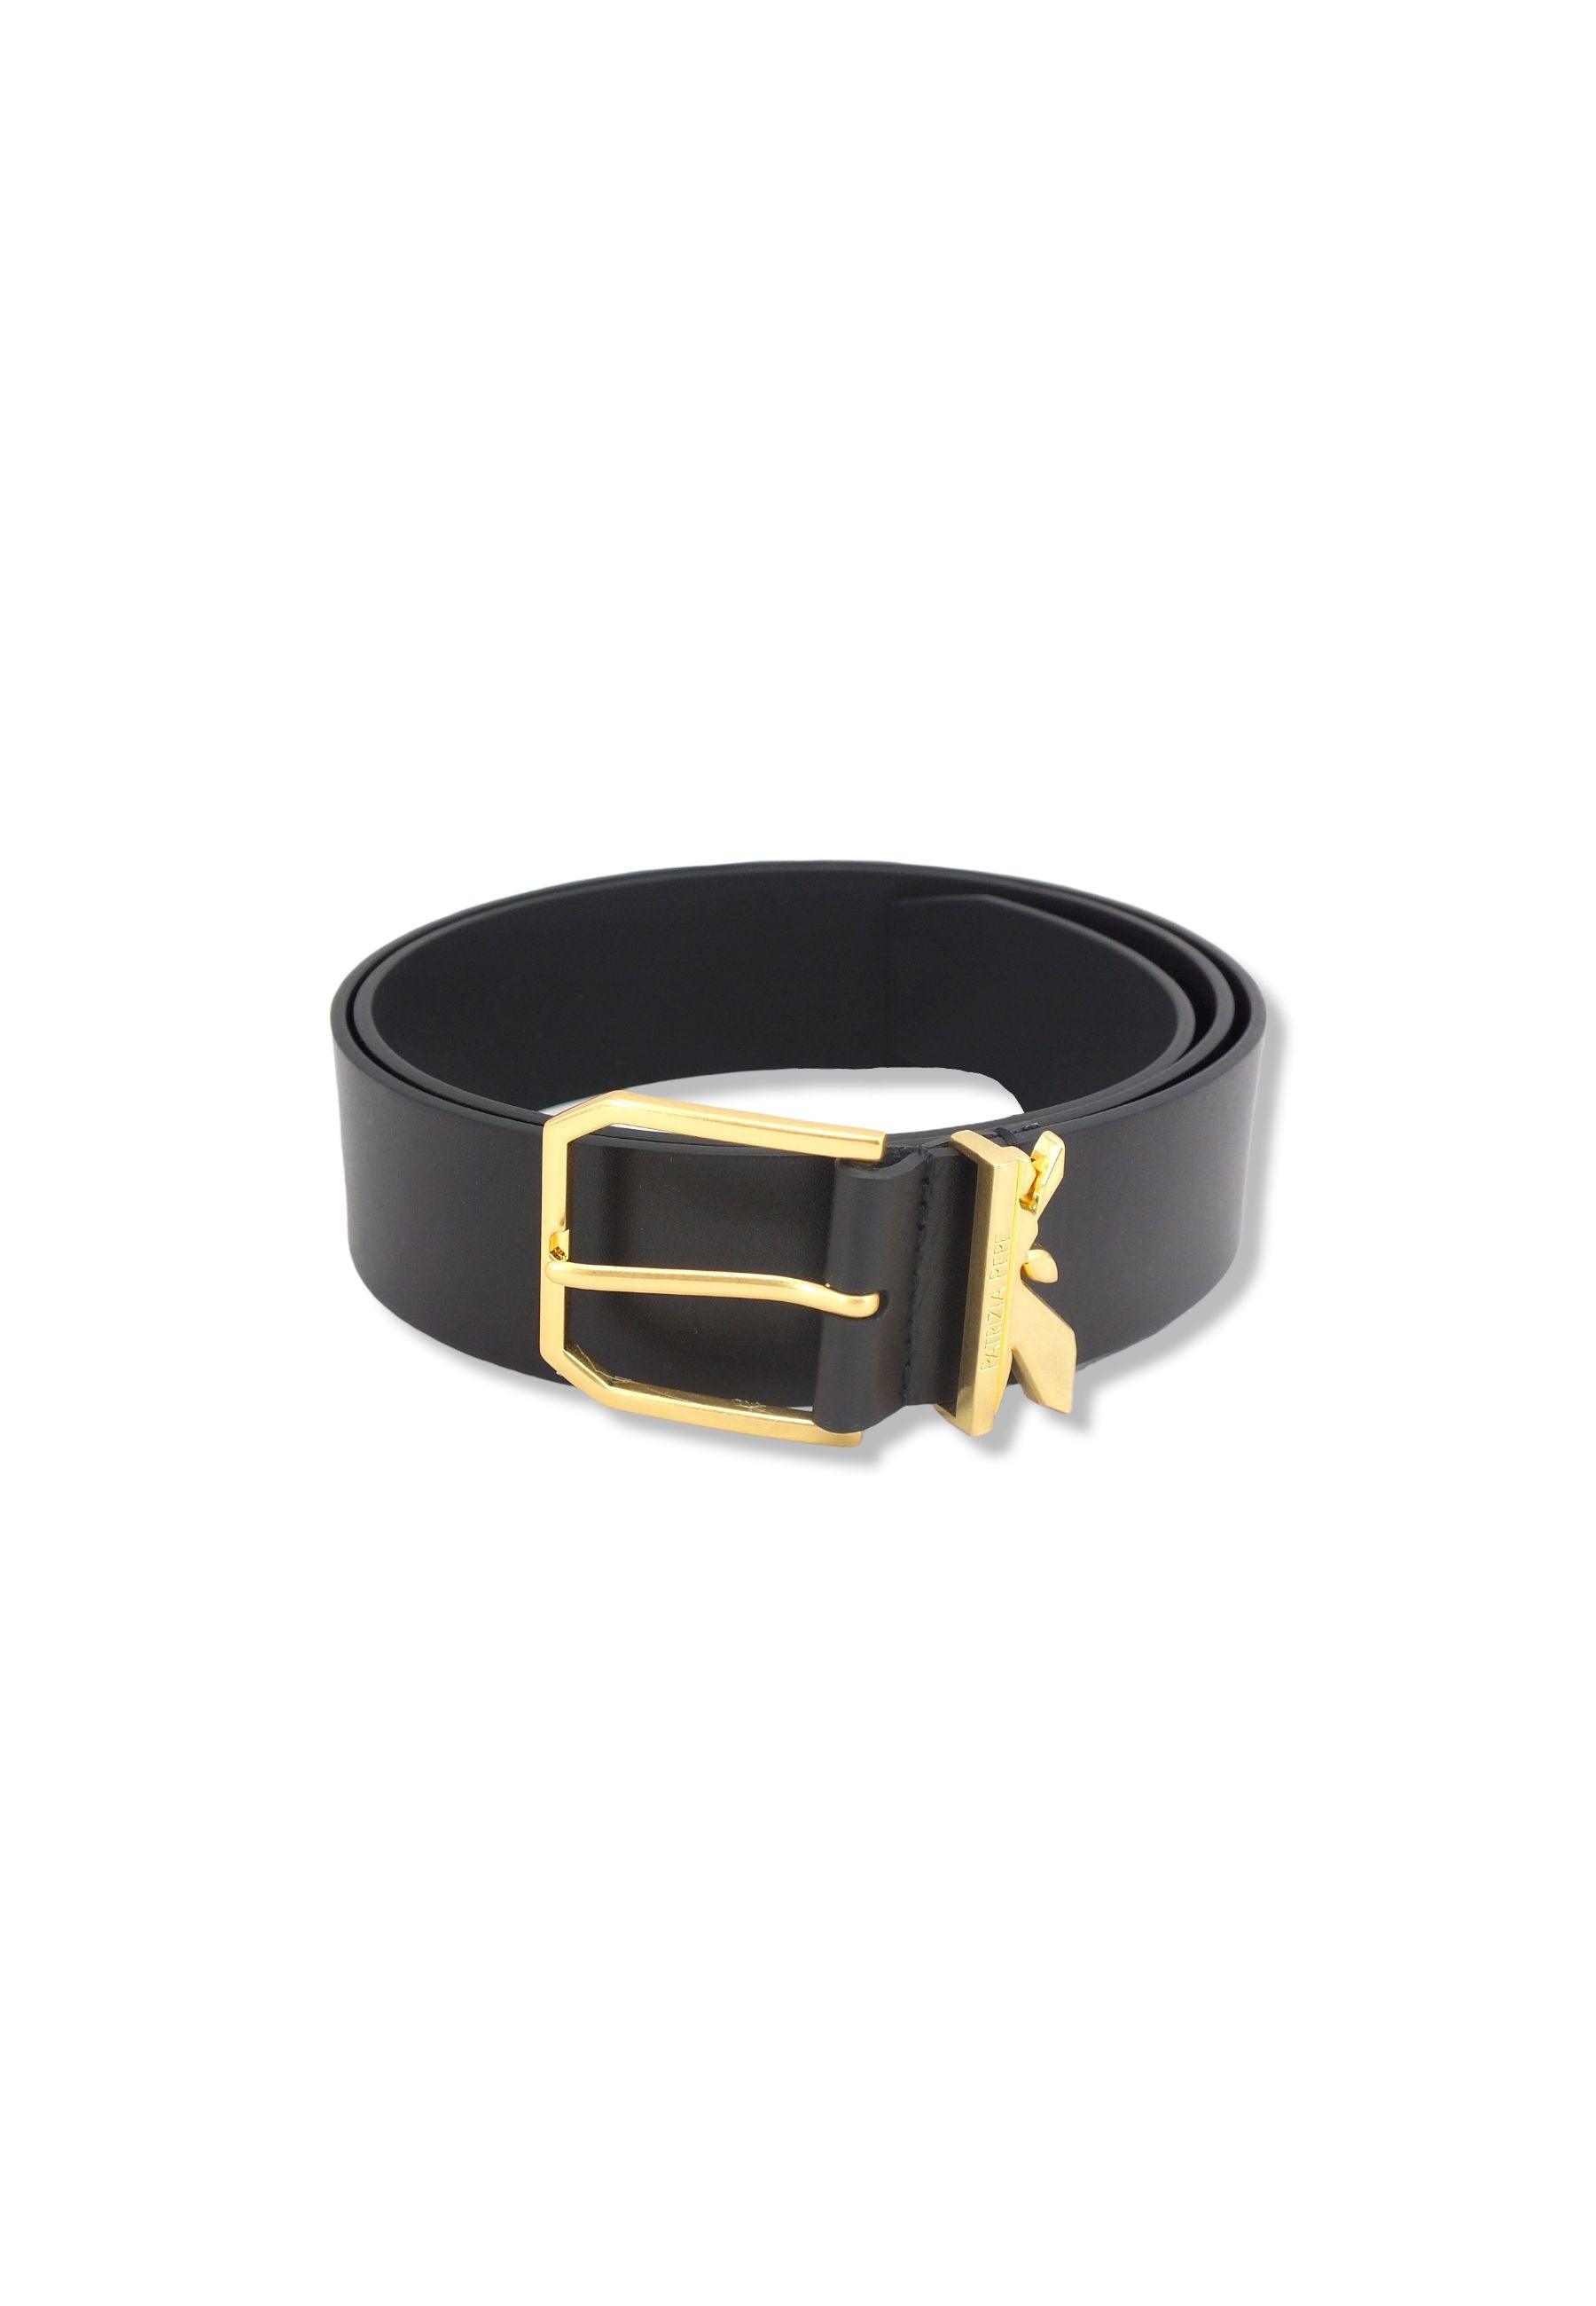 PATRIZIA PEPE Cintura Donna Logo Gold Nera 8W0008-L011 - Sandrini Calzature e Abbigliamento